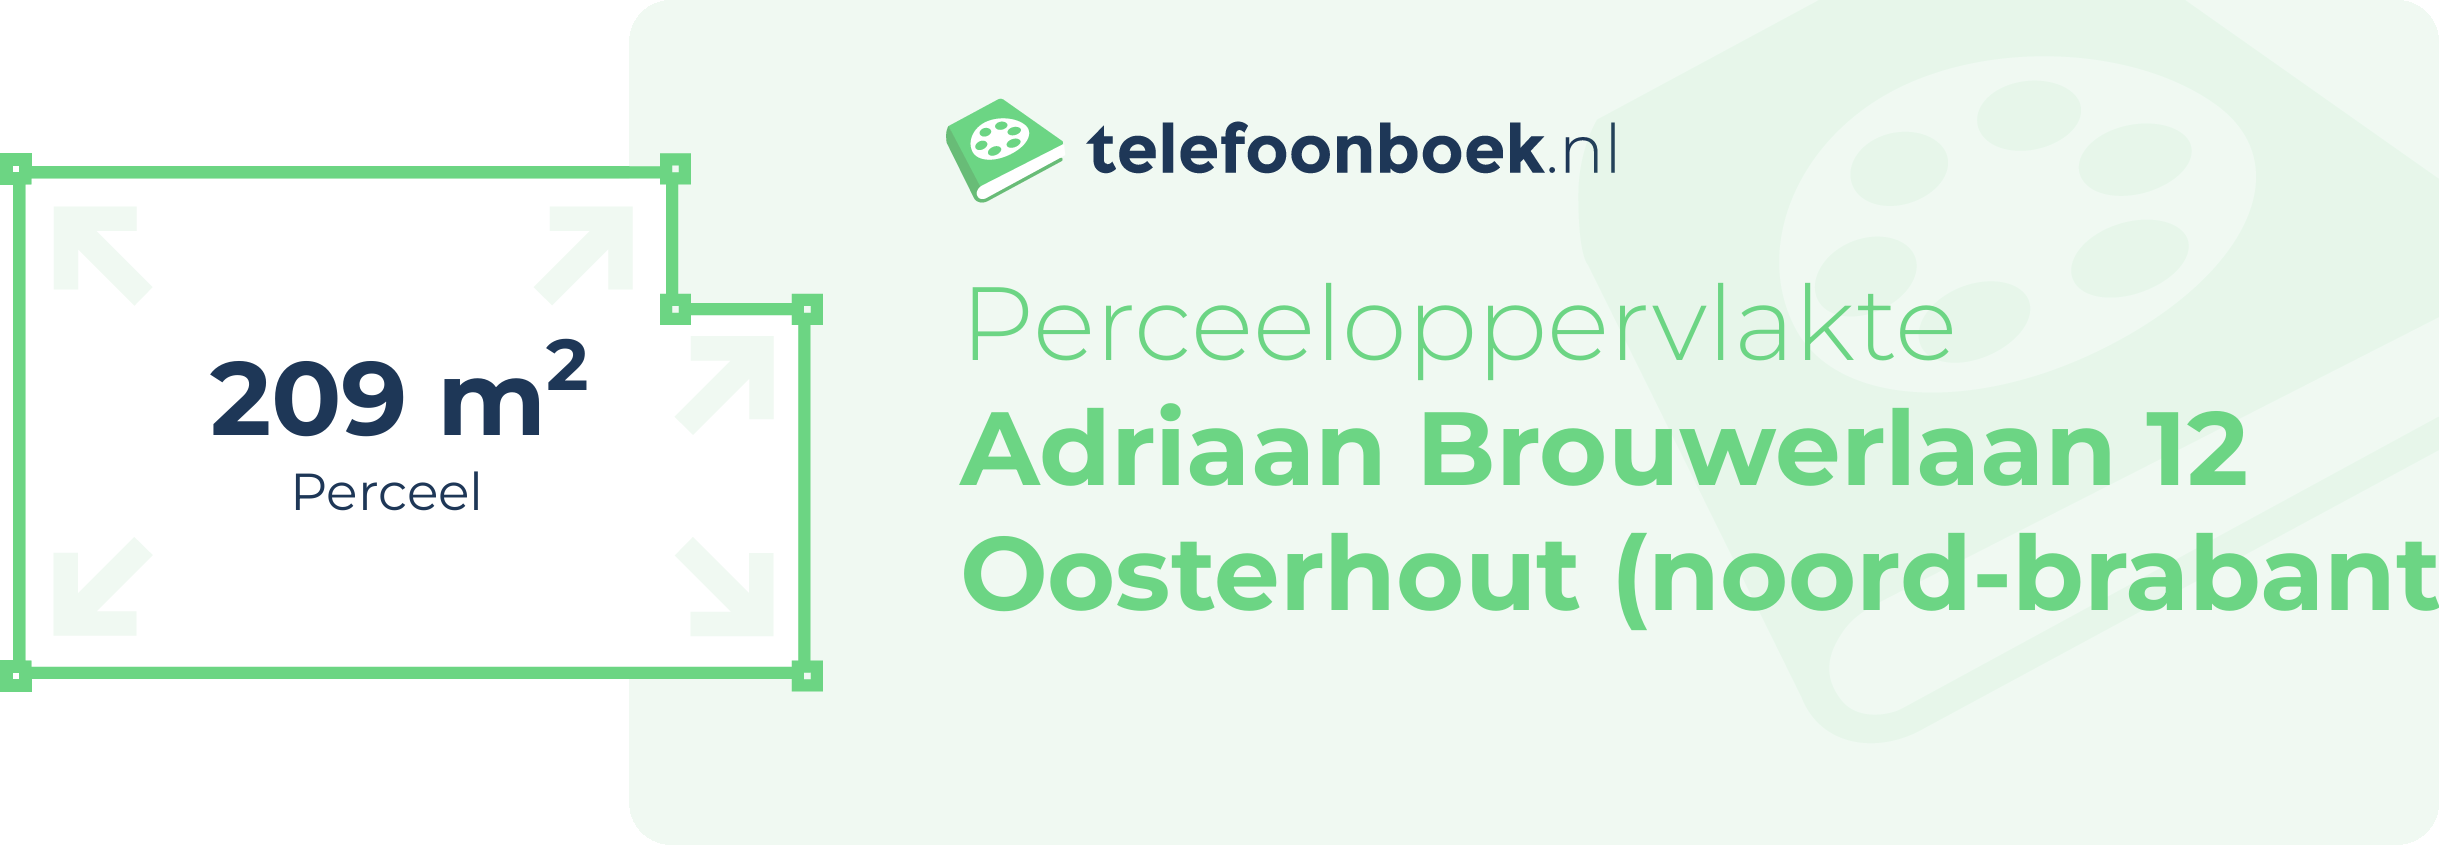 Perceeloppervlakte Adriaan Brouwerlaan 12 Oosterhout (Noord-Brabant)